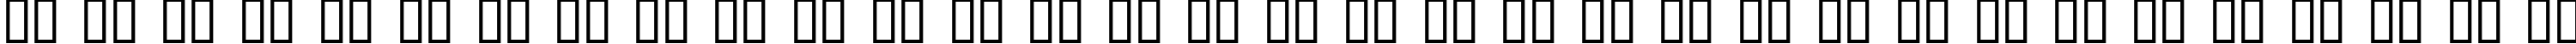 Пример написания русского алфавита шрифтом Cavalier